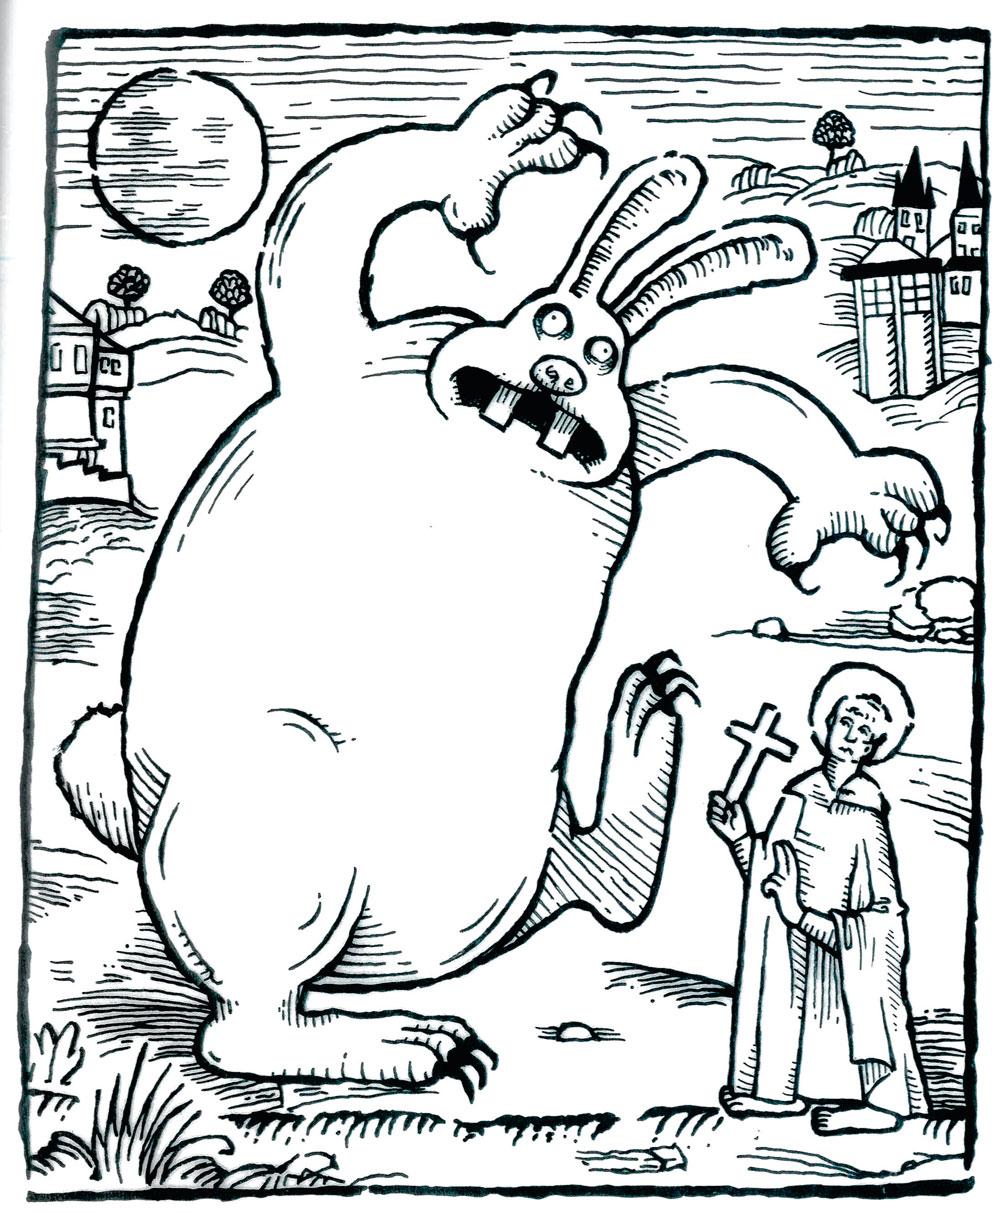 Détail du Livre des monstres inspiré des gravures sur bois médiévales, dessiné par Gavin Lines pour Le Mystère du lapin-garou de Nick Park et Steve Box.